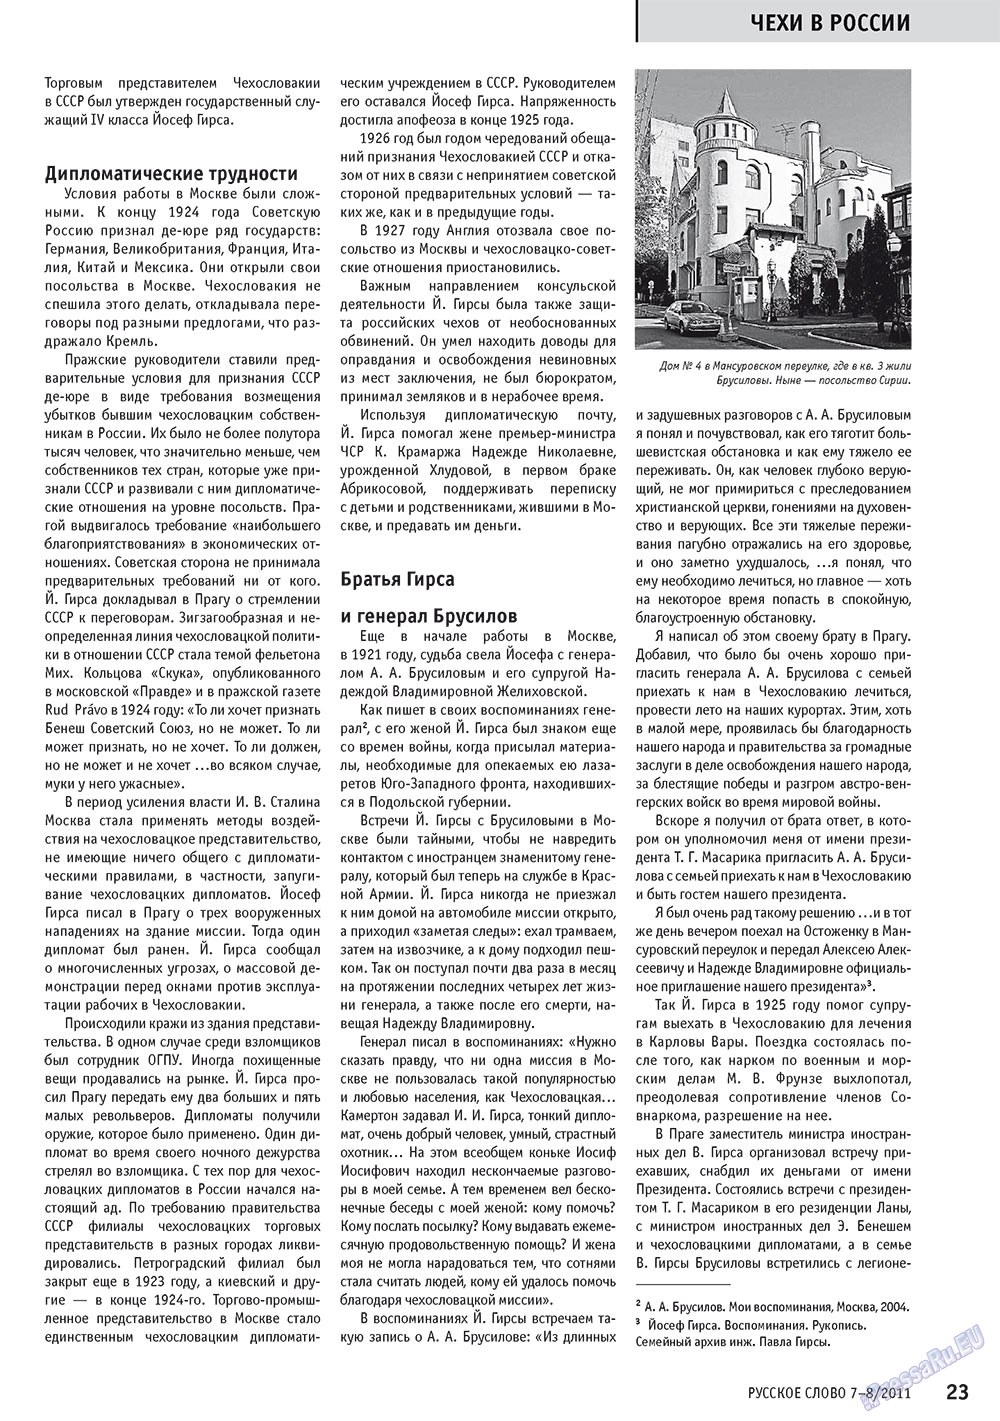 Русское слово, журнал. 2011 №7 стр.25